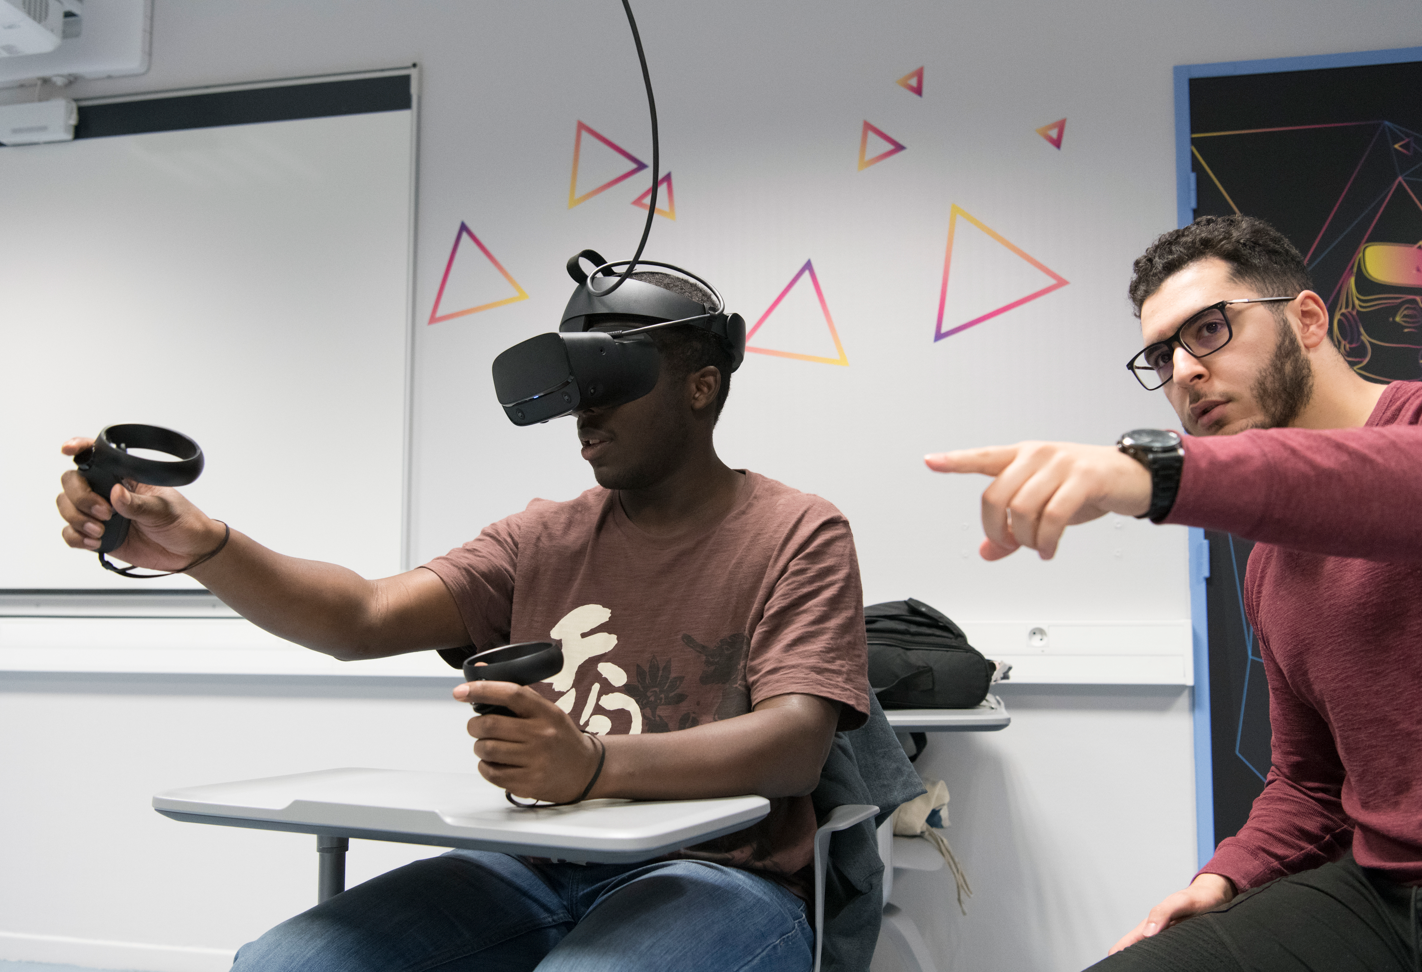 Etudiants avec casque de réalité virtuelle